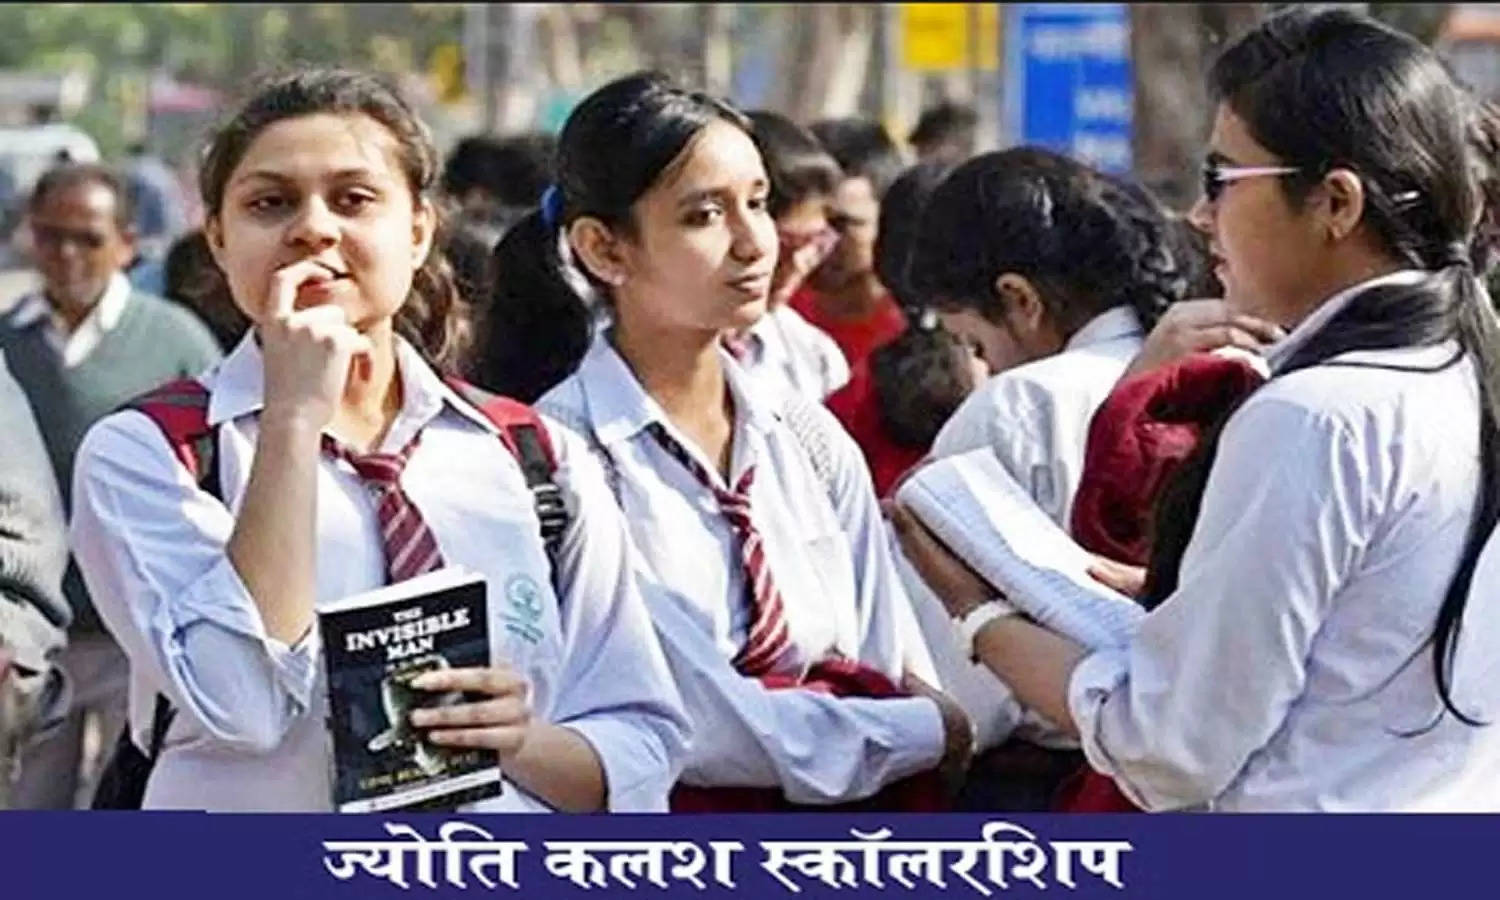 UP Jyoti Kalash Scholarship Scheme: यूपी सरकार इस योजना के तहत दसवीं पास छात्राओं को देगी 15 हजार, जाने आवेदन प्रक्रियां